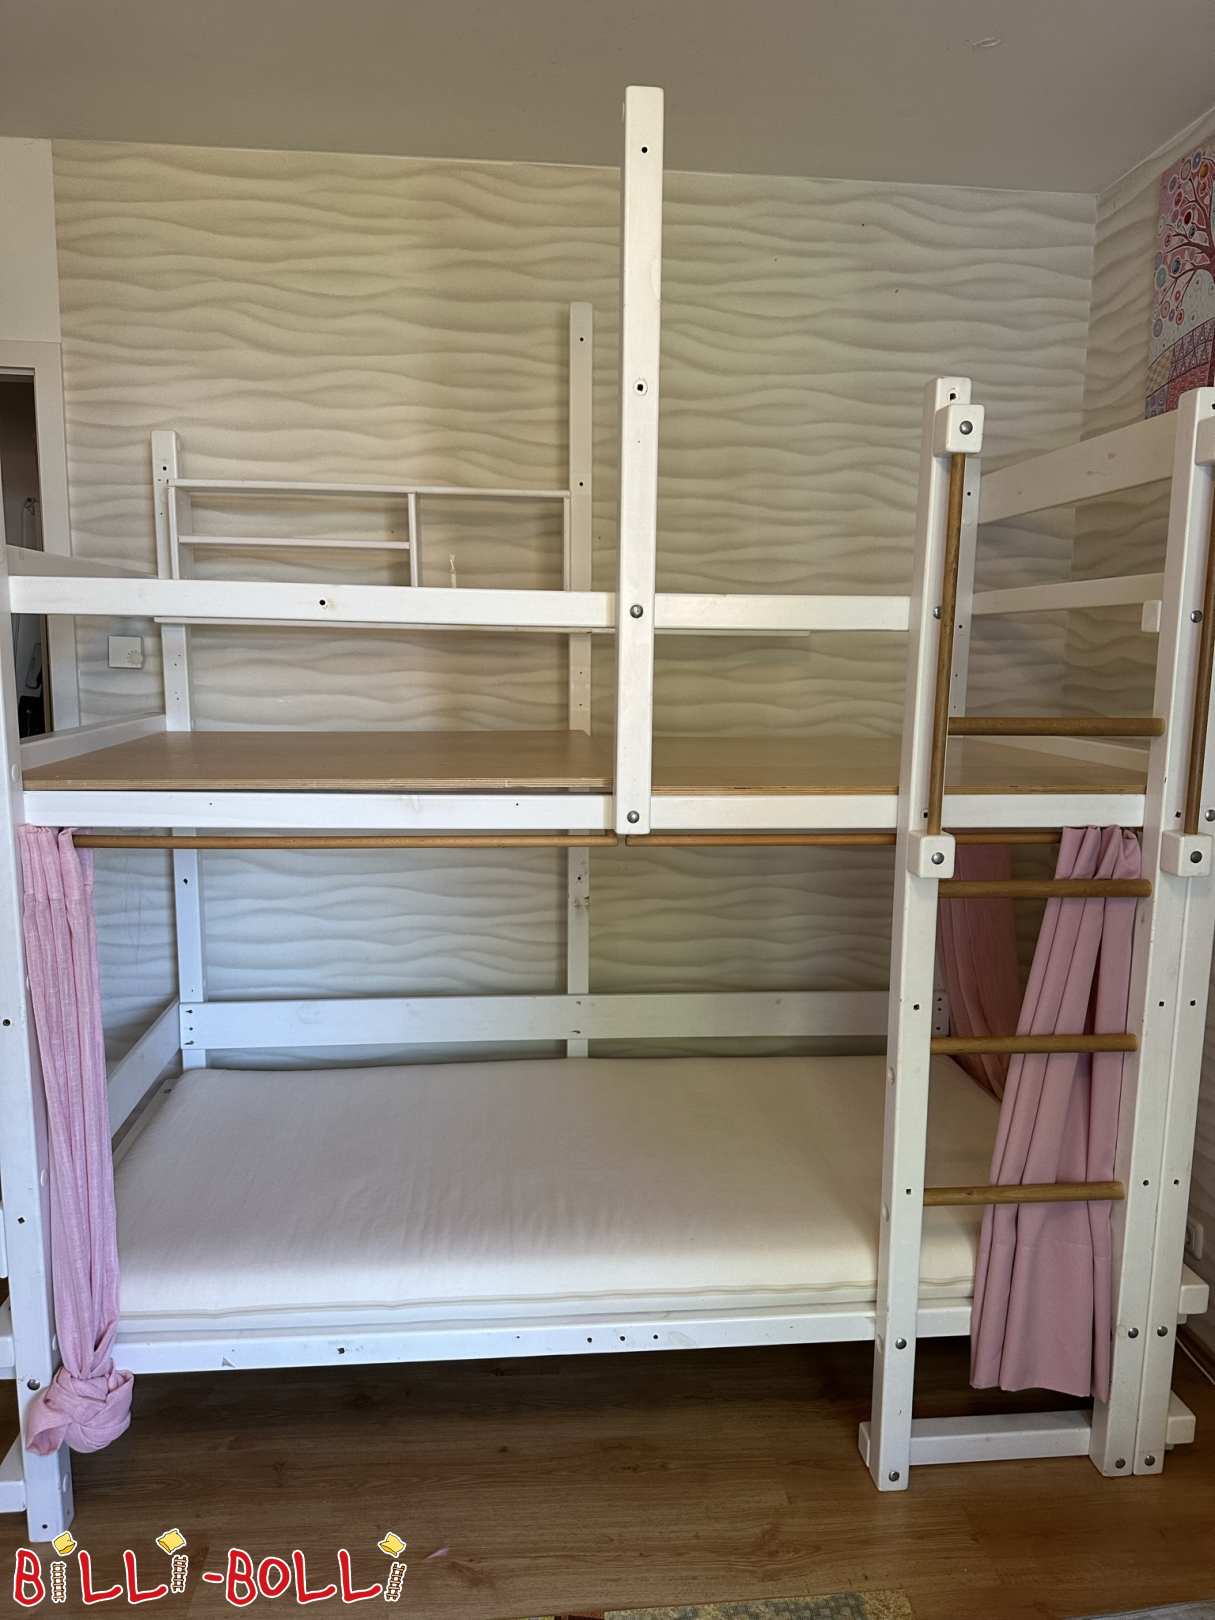 Gojenje podstrešne postelje iz masivnega lesa, belo lakirano, rabljeno (Category: Podstrešna postelja, ki raste z otrokom used)